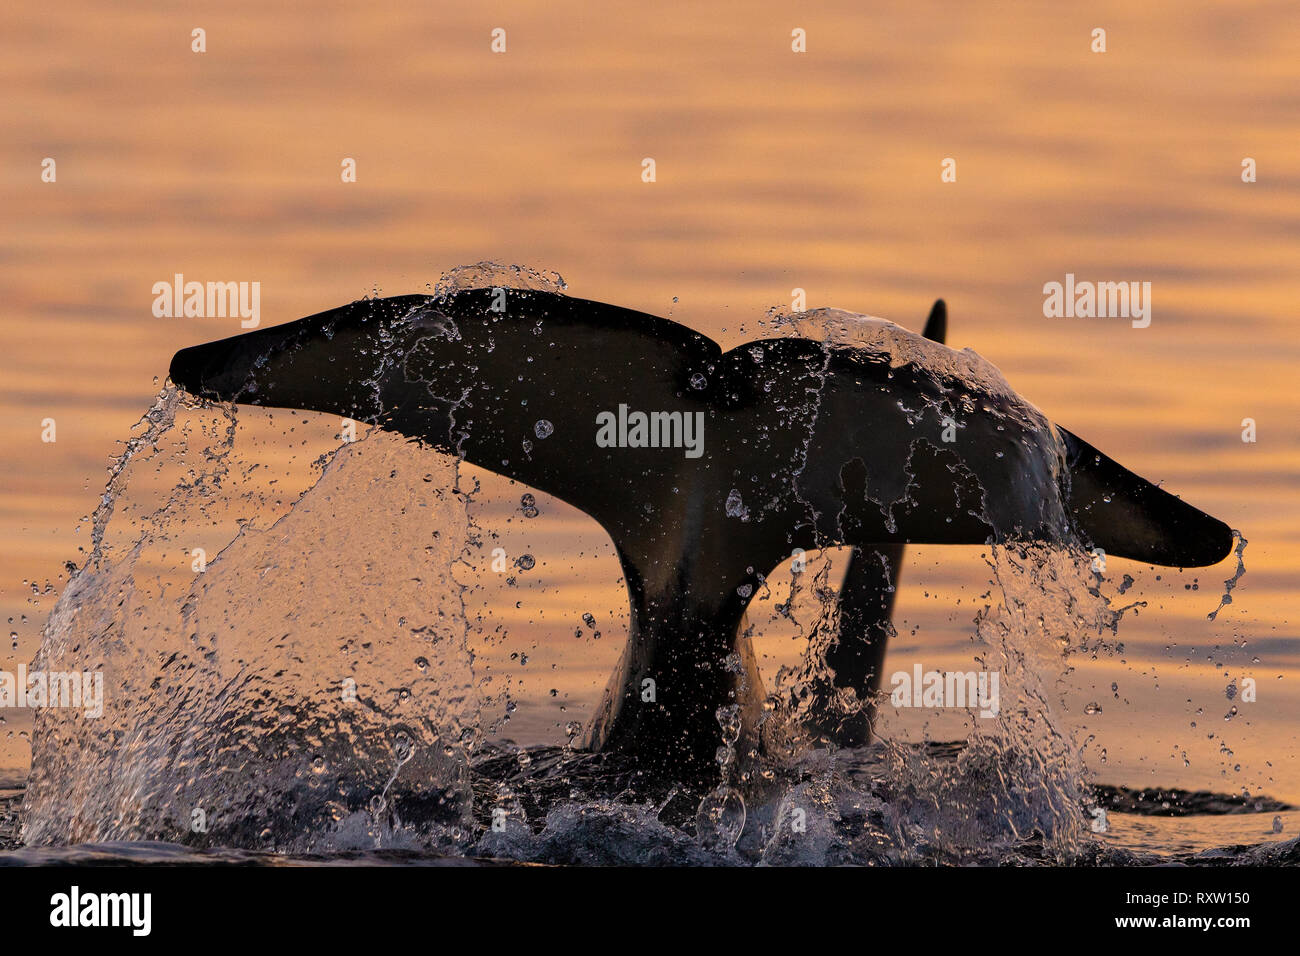 Cola de orcinus orca residente del norte que salpicaba cerca en el estrecho de Queen Charlotte, archipiélago de Broughton, Territorio de las primeras Naciones, Columbia Británica, Canadá. Foto de stock